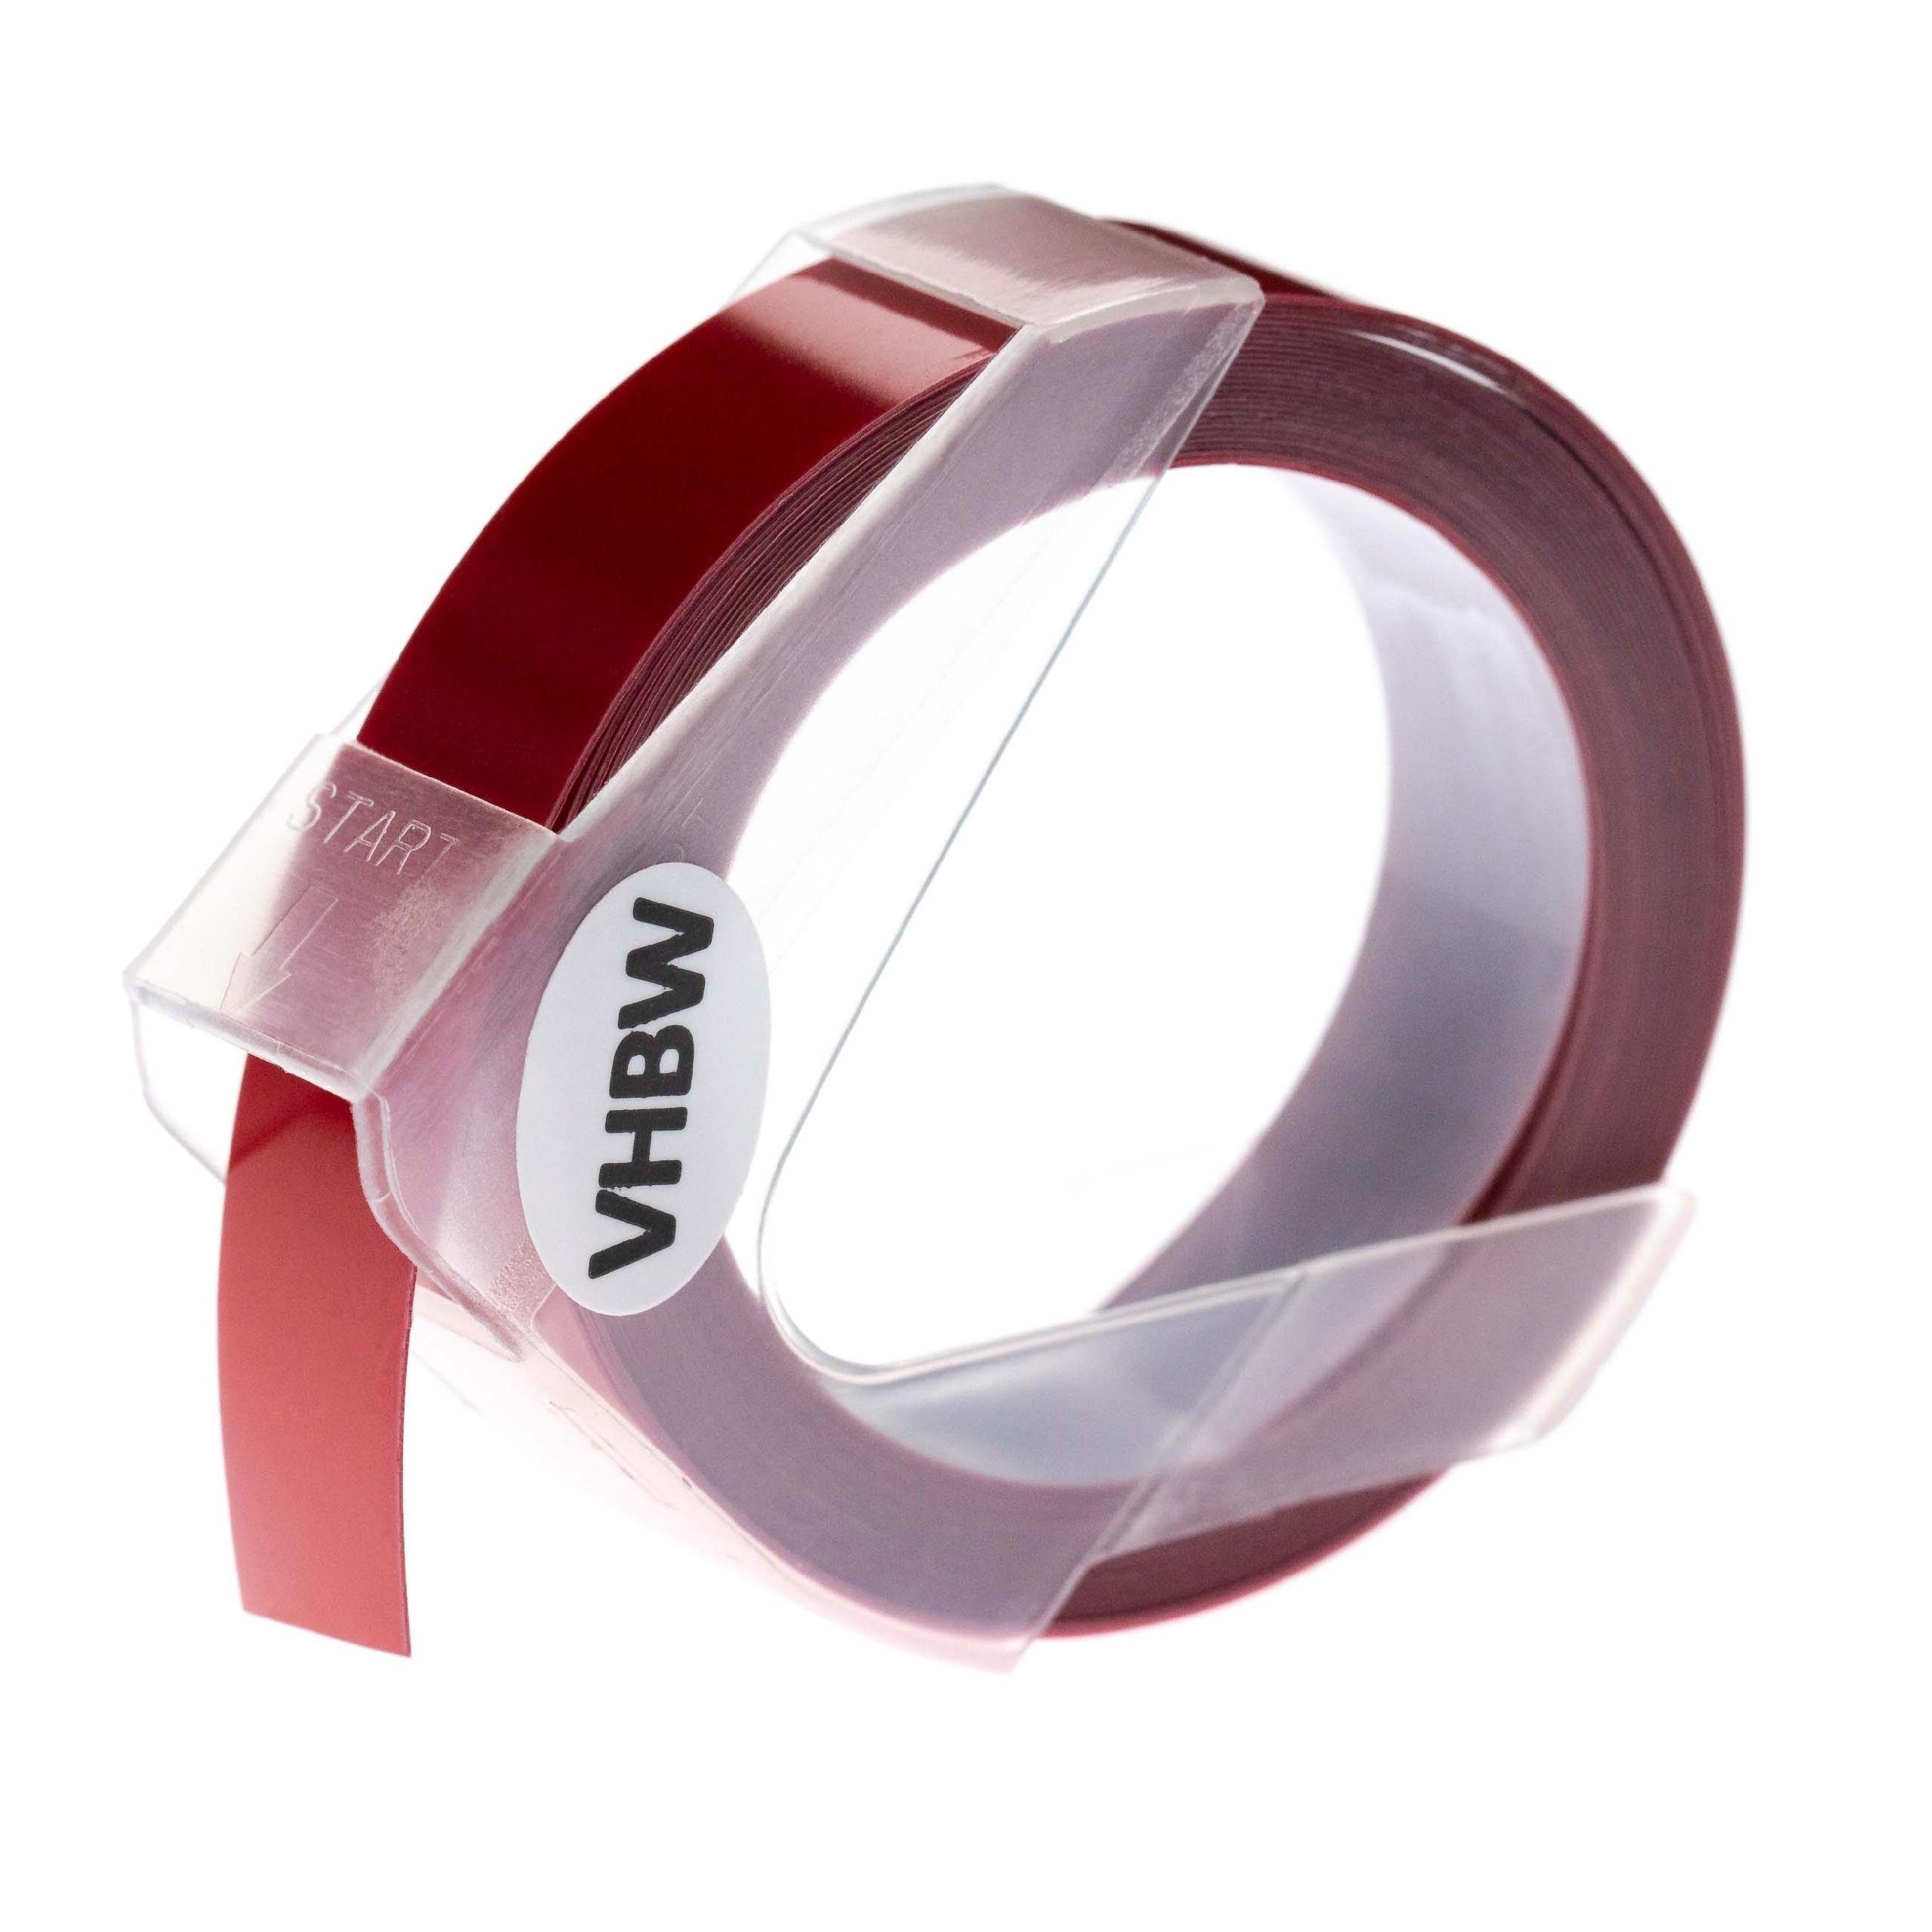 vhbw Beschriftungsband passend für Dymo Rhino M1011 Drucker & Kopierer Etikettendrucker